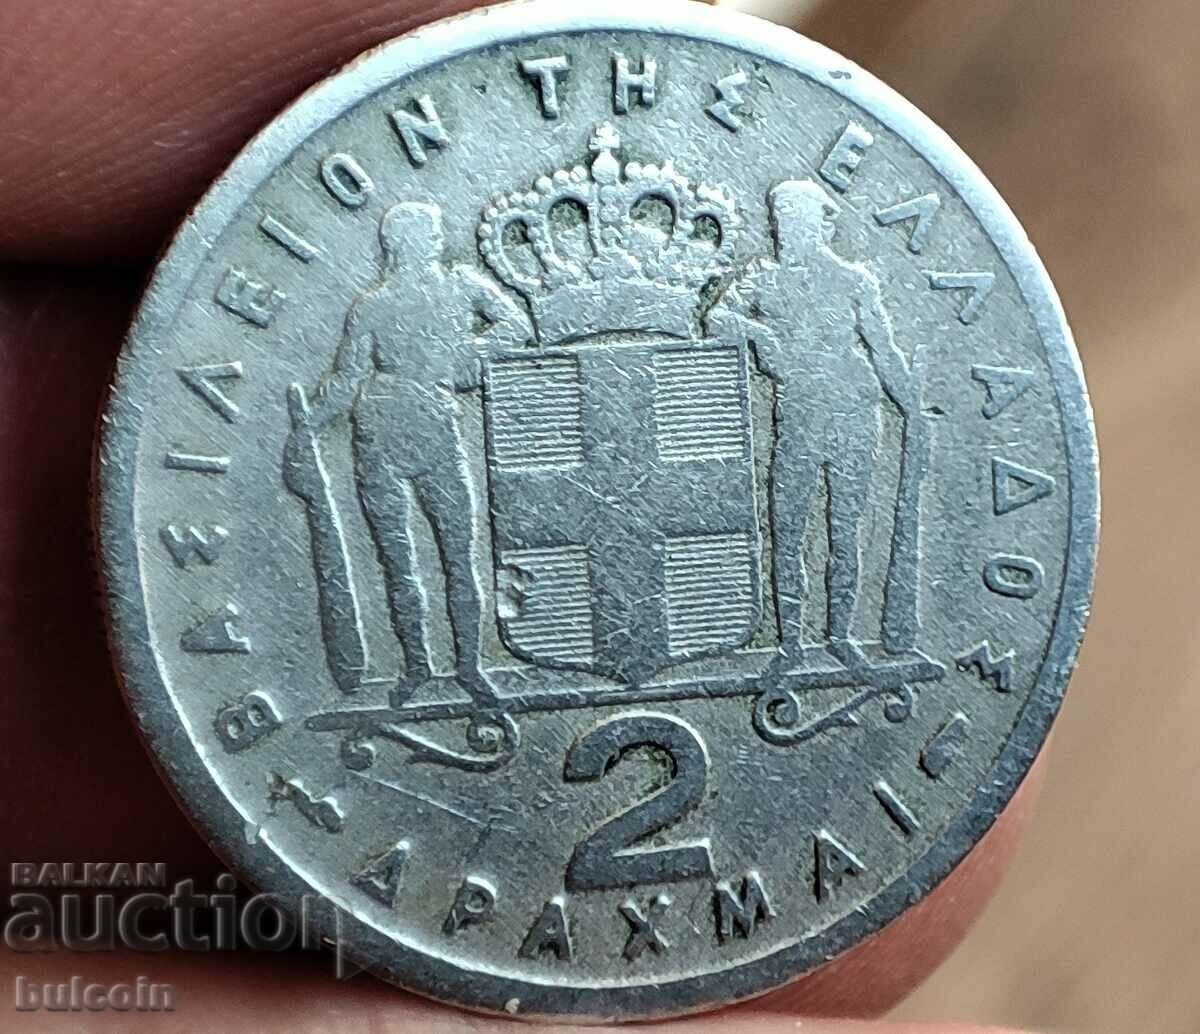 GREECE COIN 2 DRACHMS 1954 / KING PAULOS I